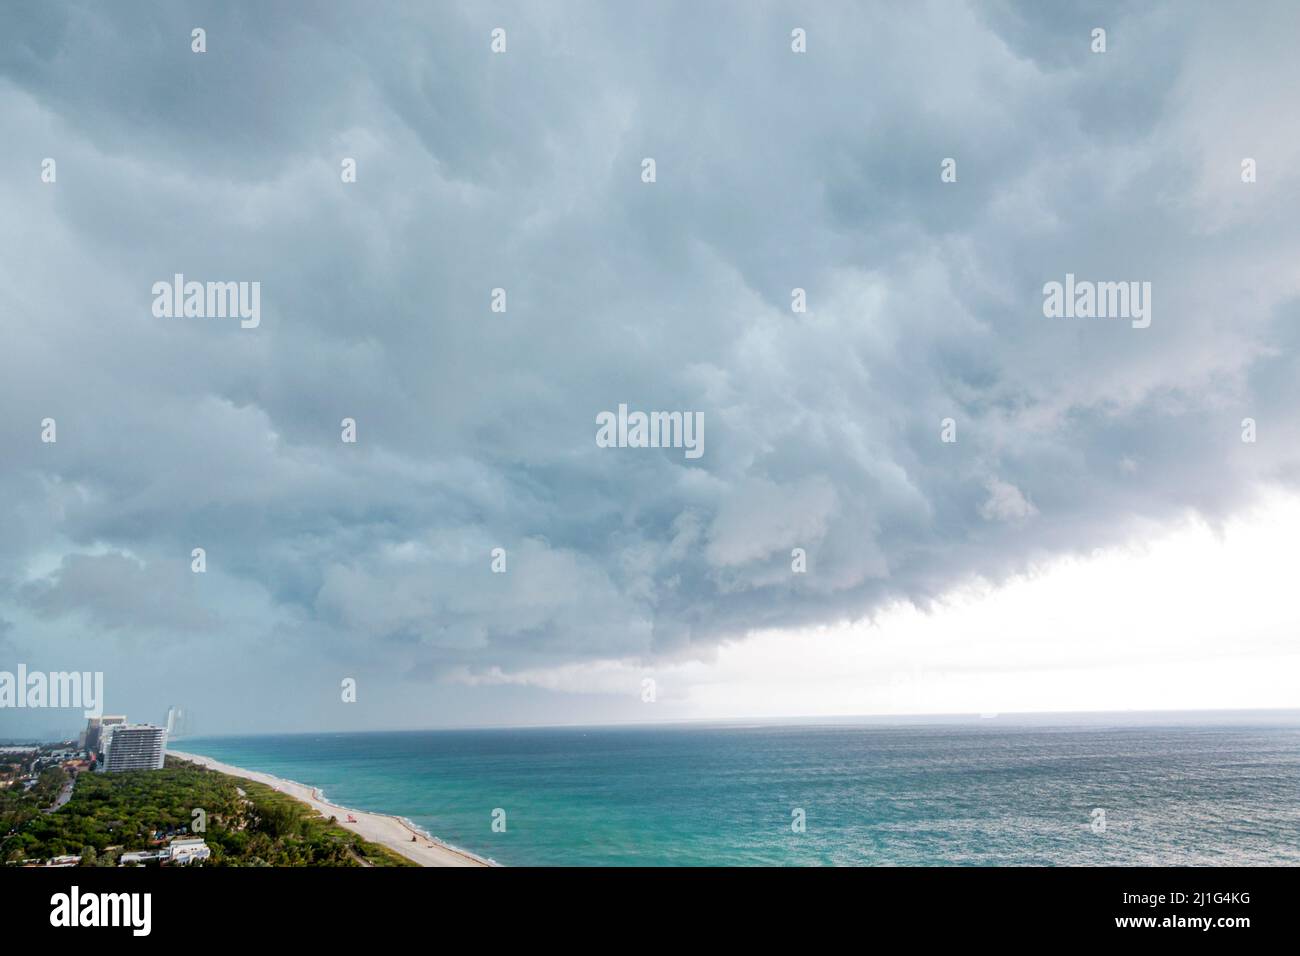 Miami Beach Florida, North Beach, Wetter Sturm sturmfront regen Wolken, Atlantischer Ozean Wasser, Besucher reisen Reise touristischer Tourismus Wahrzeichen Land Stockfoto